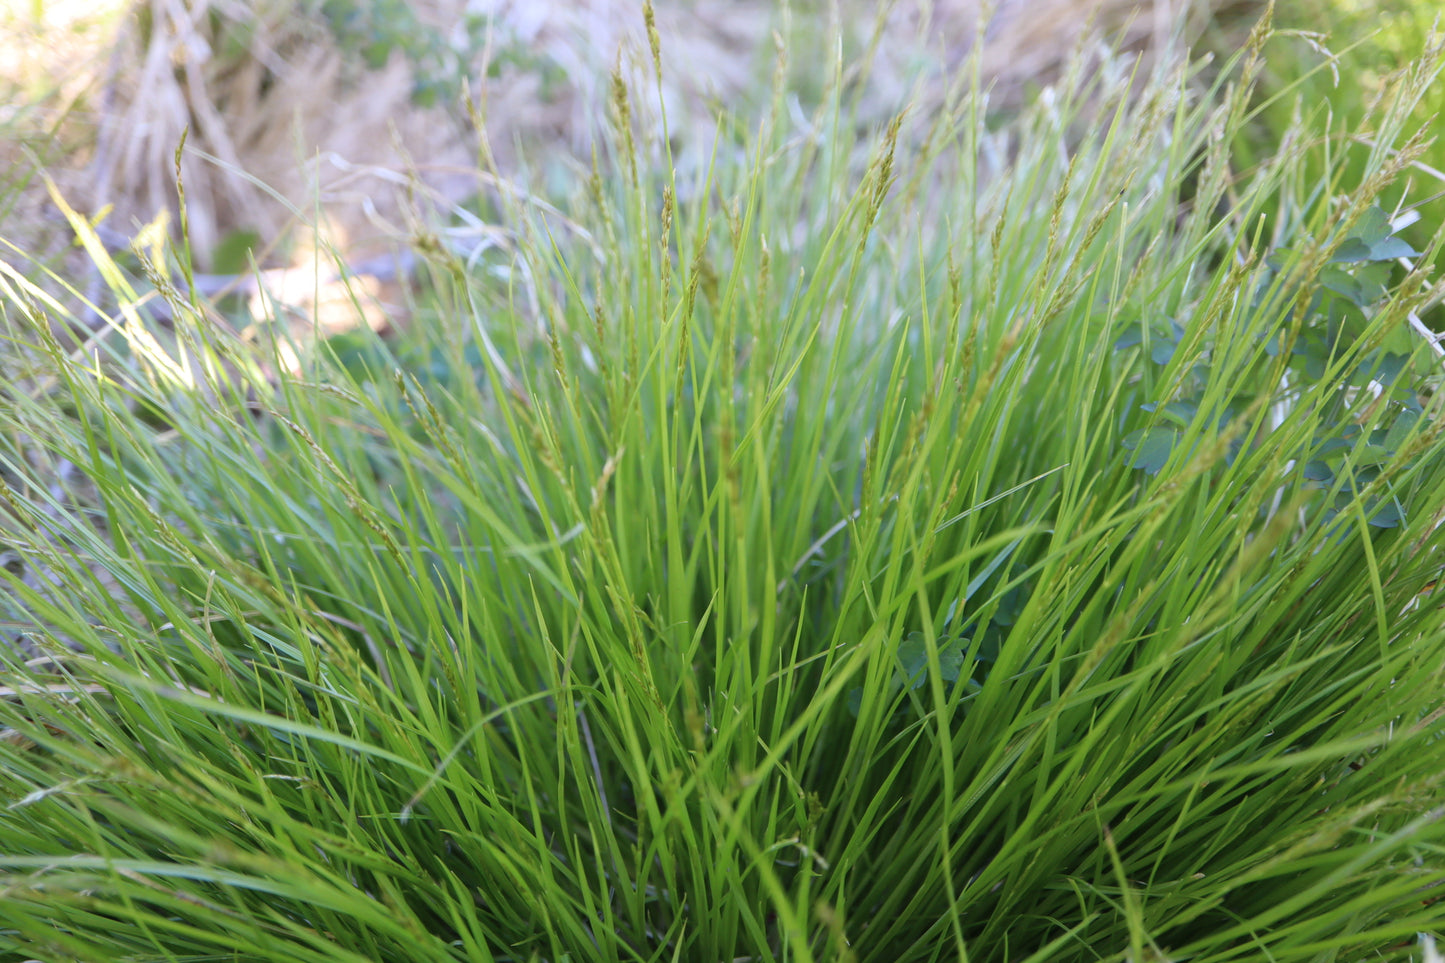 Carex bromoides (Fr: carex faux-brome | En: Brome-like sedge)